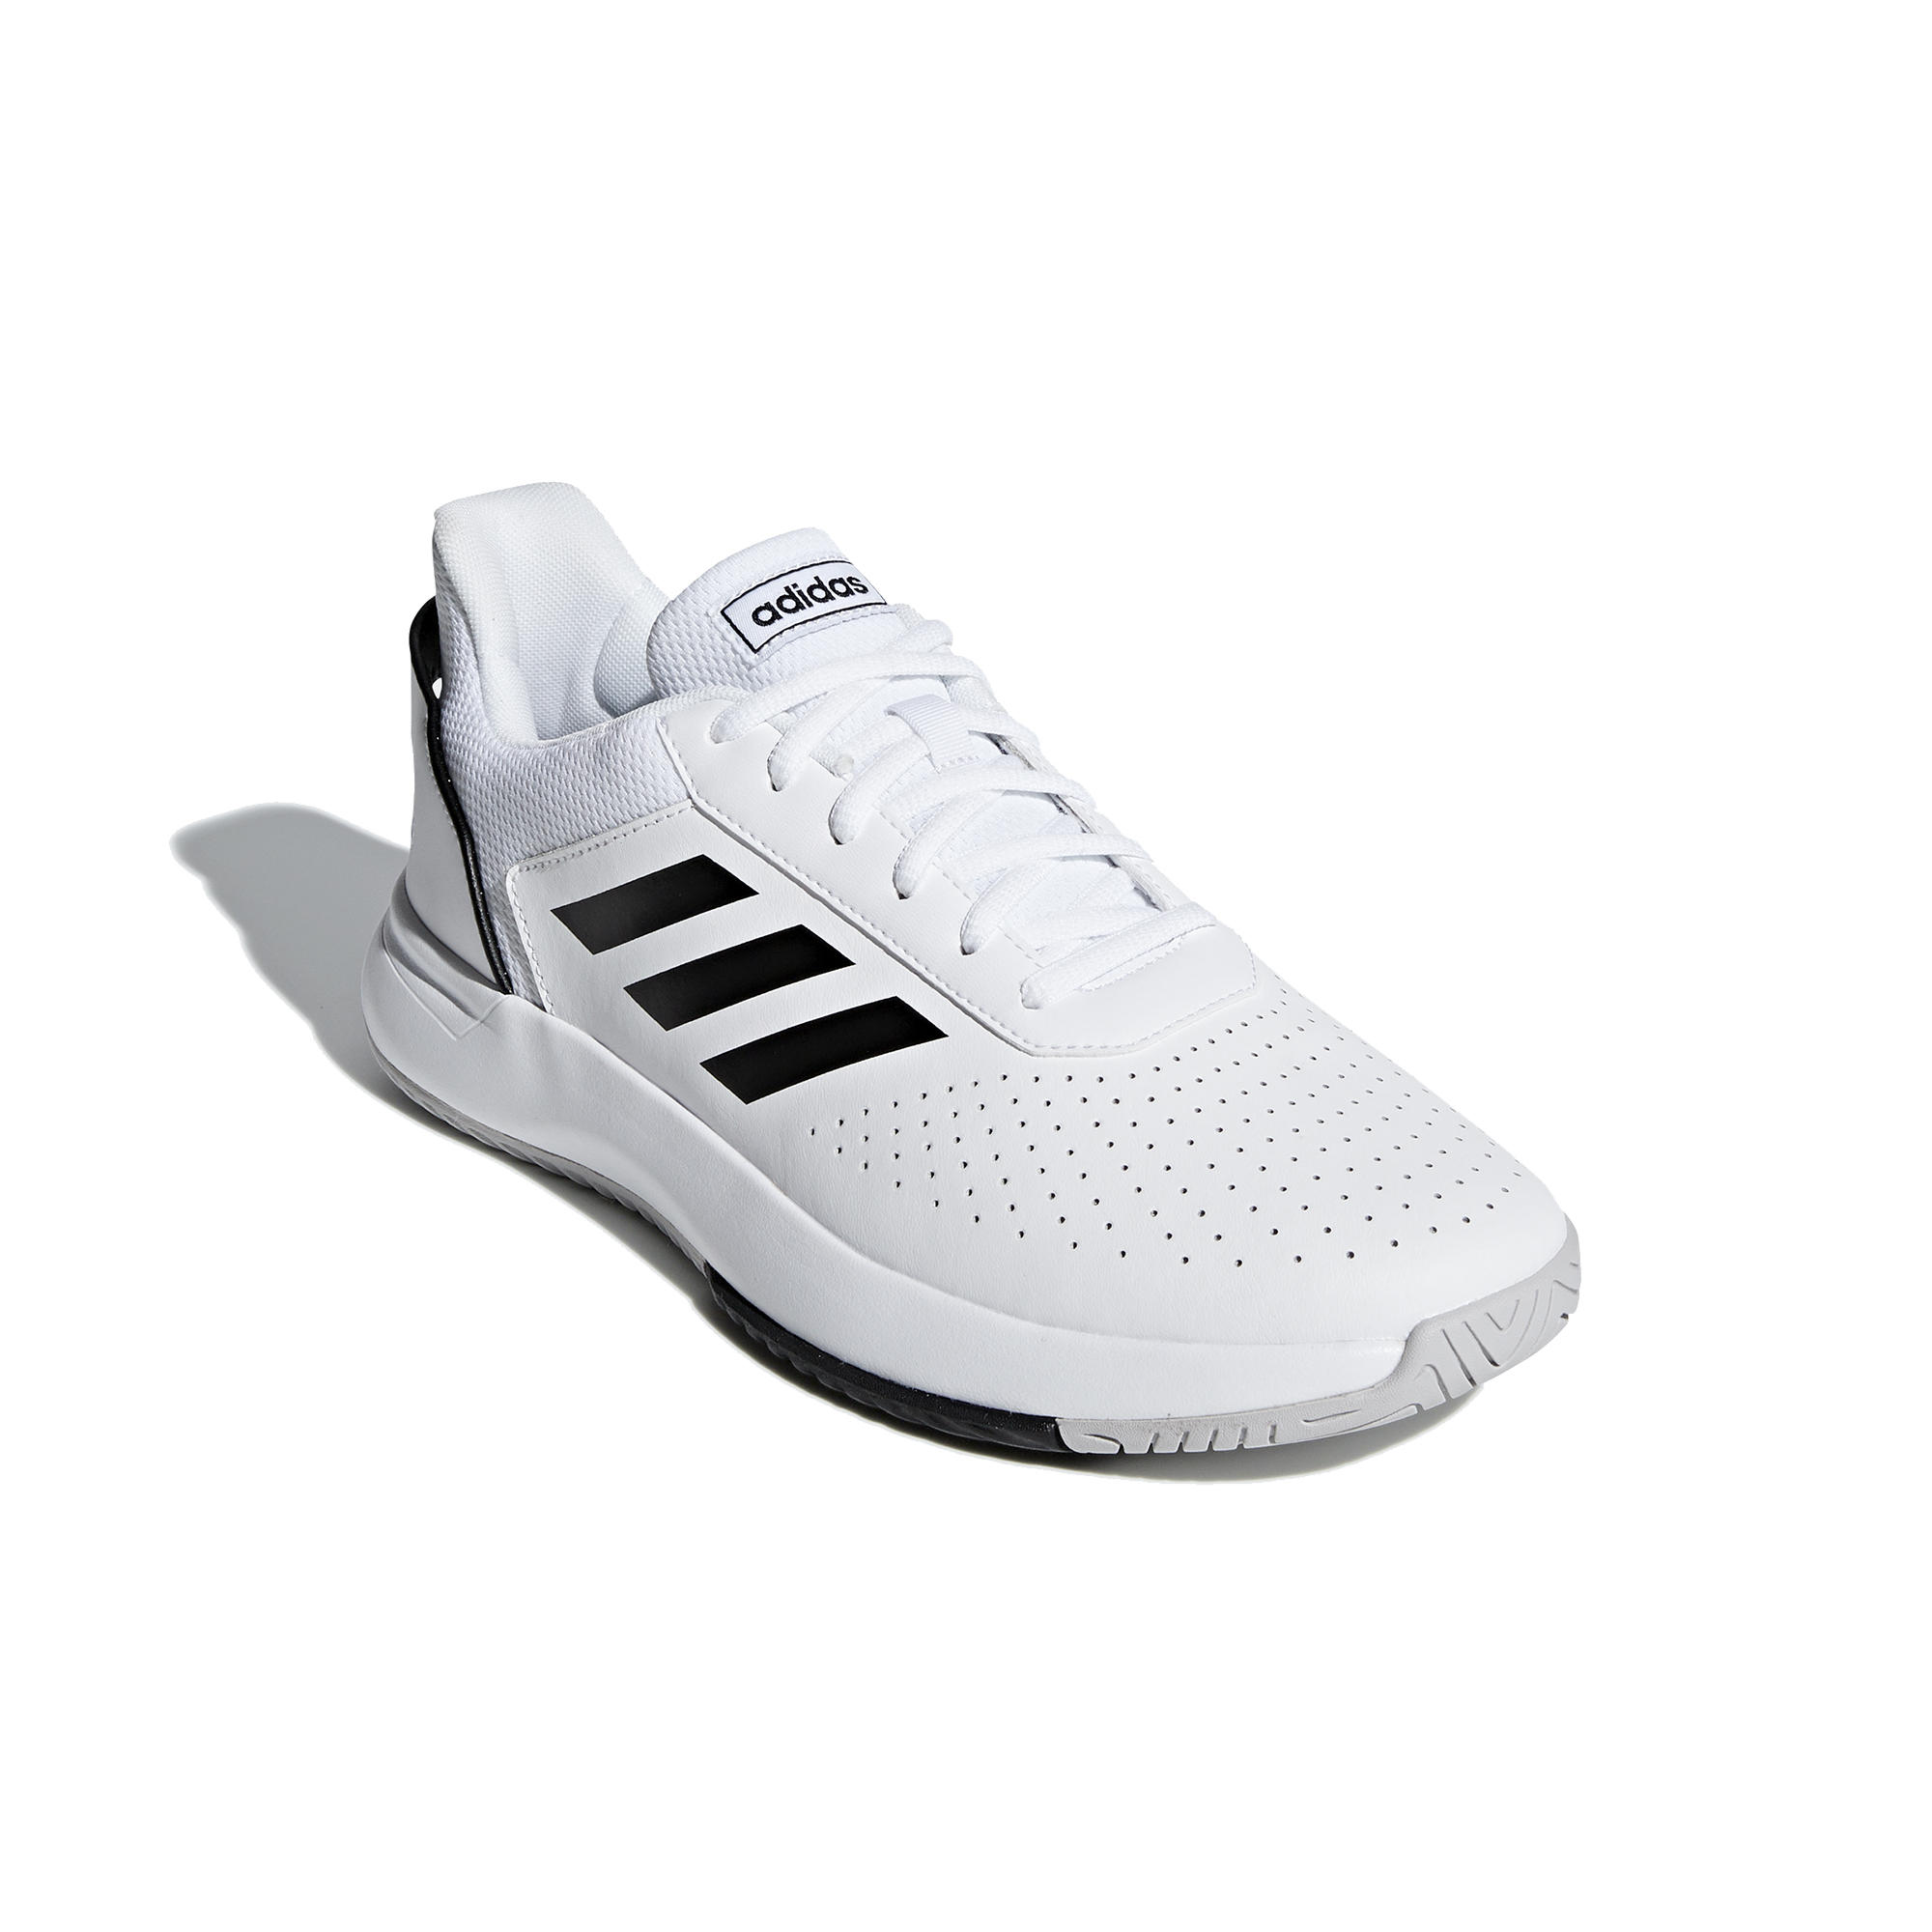 Men's Tennis Shoes Courtsmash - White 